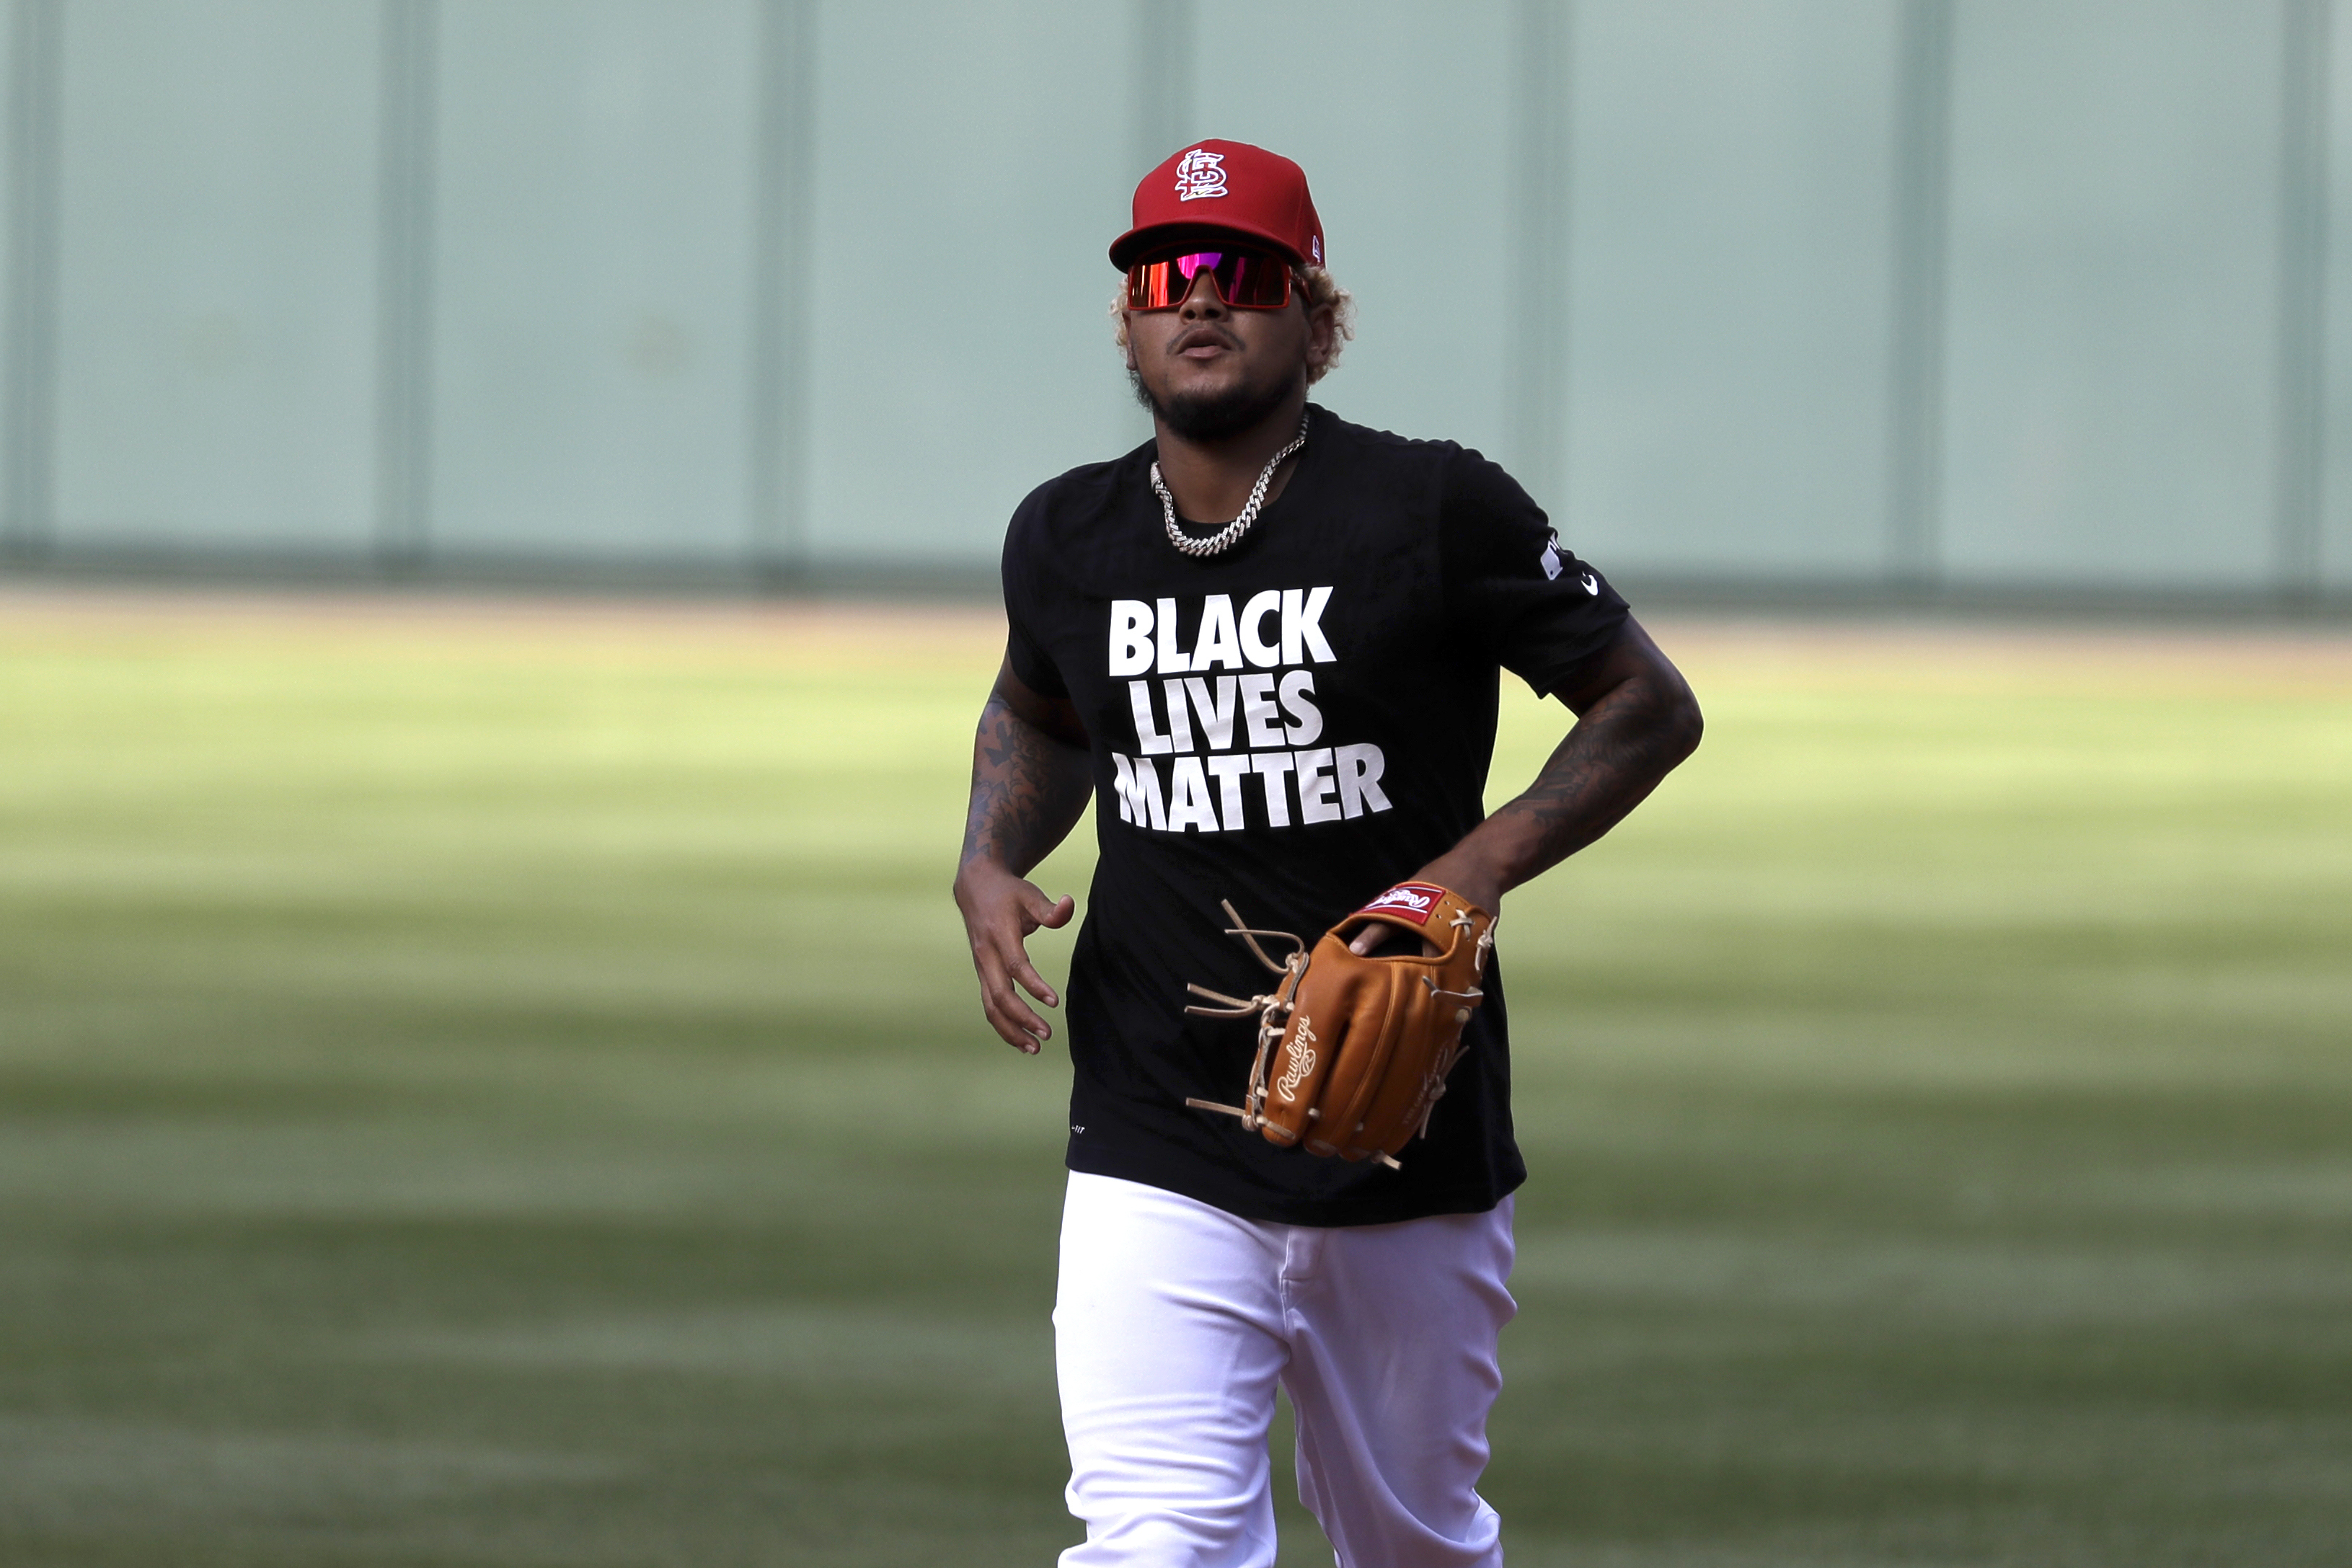 St. Louis Cardinals wear 'Black Lives Matter' shirts during